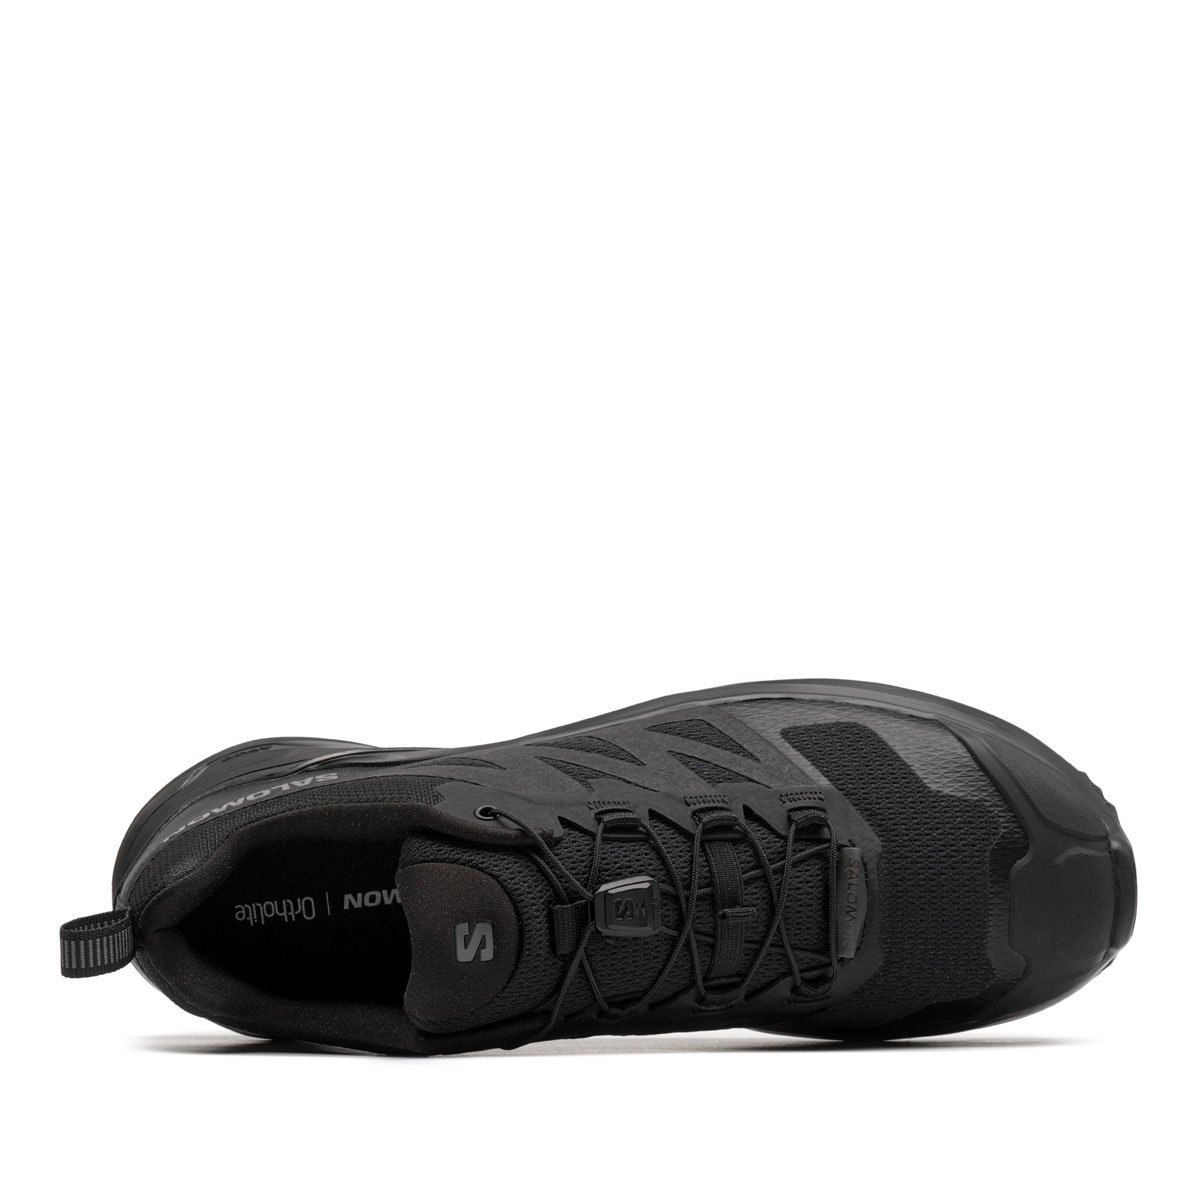 Salomon X-Adventure Мъжки спортни обувки 473210